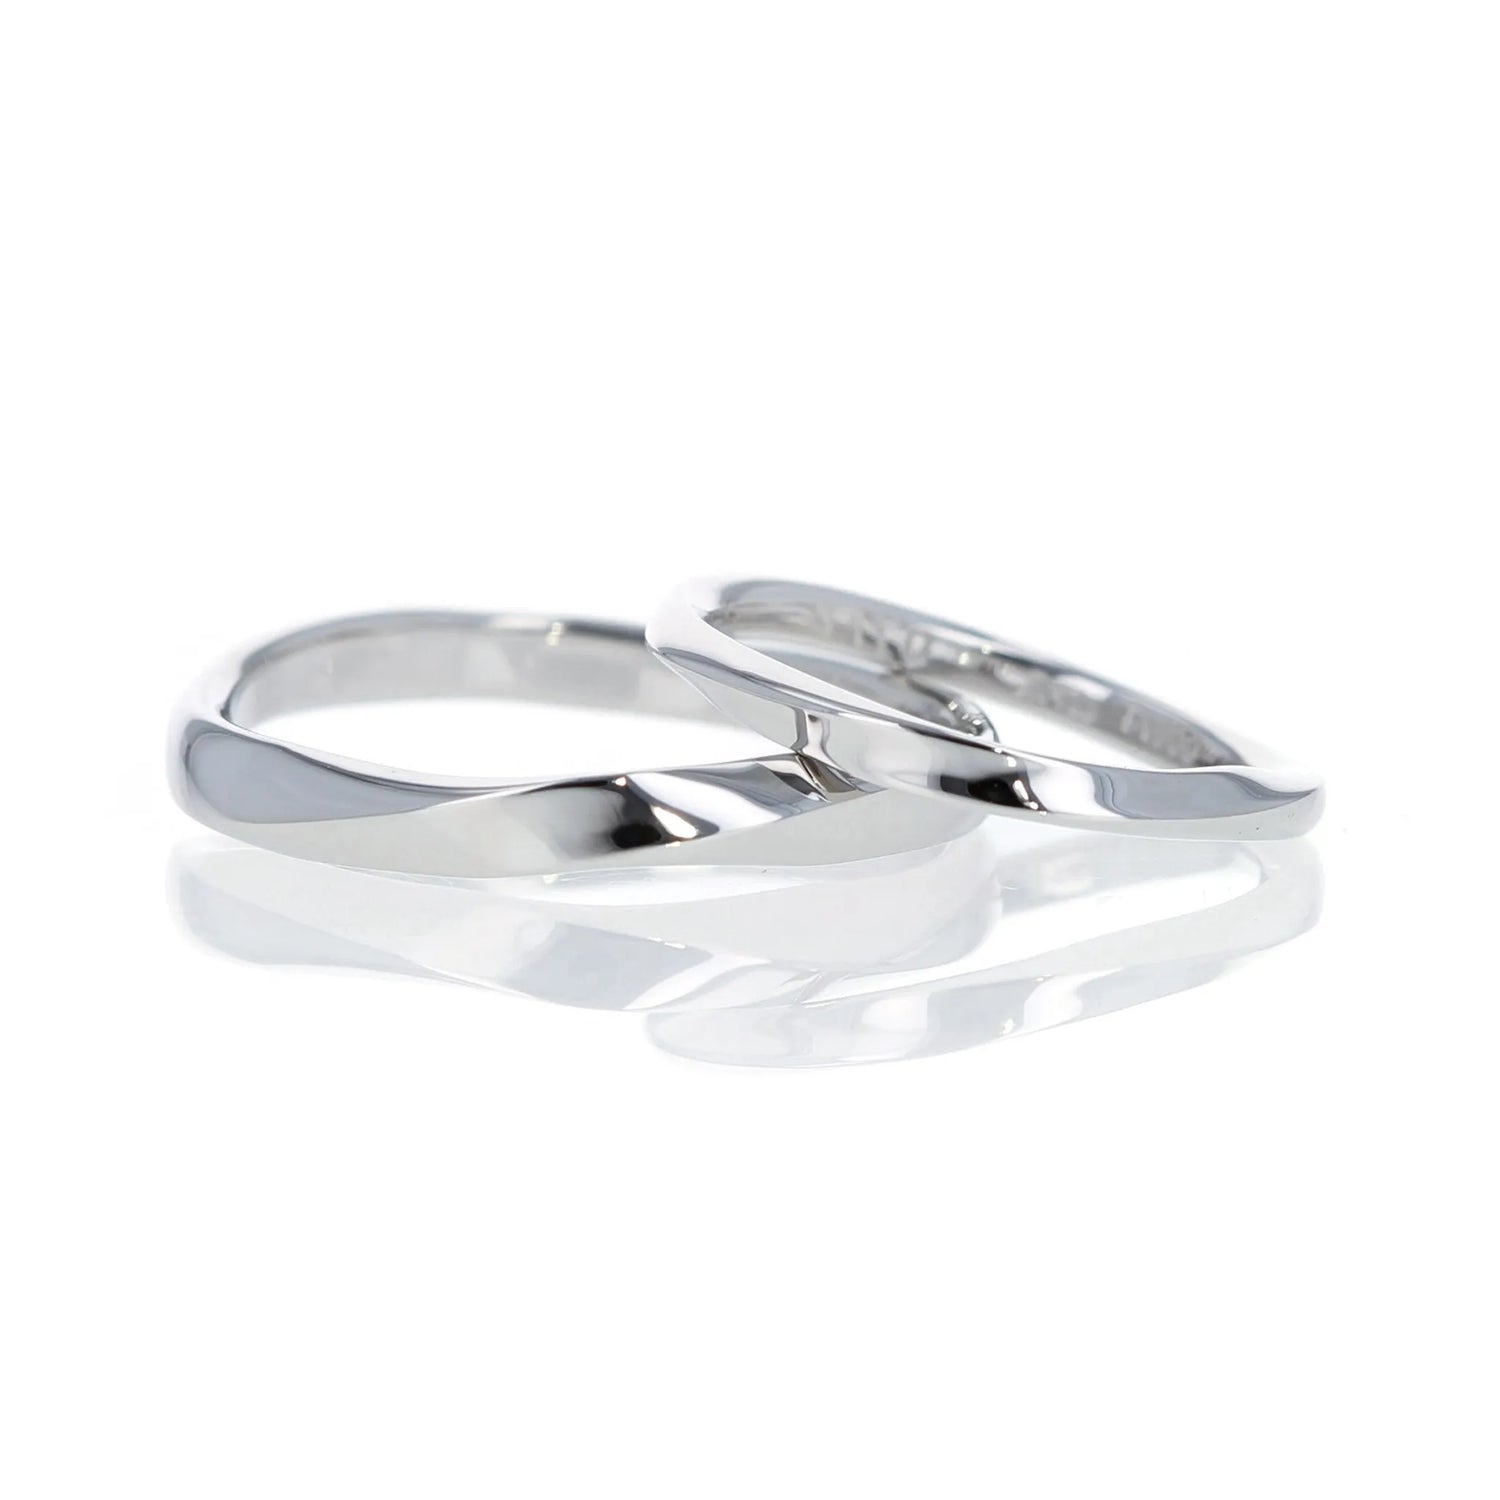  ひねりとエッジのきいたシンプルなデザインの結婚指輪